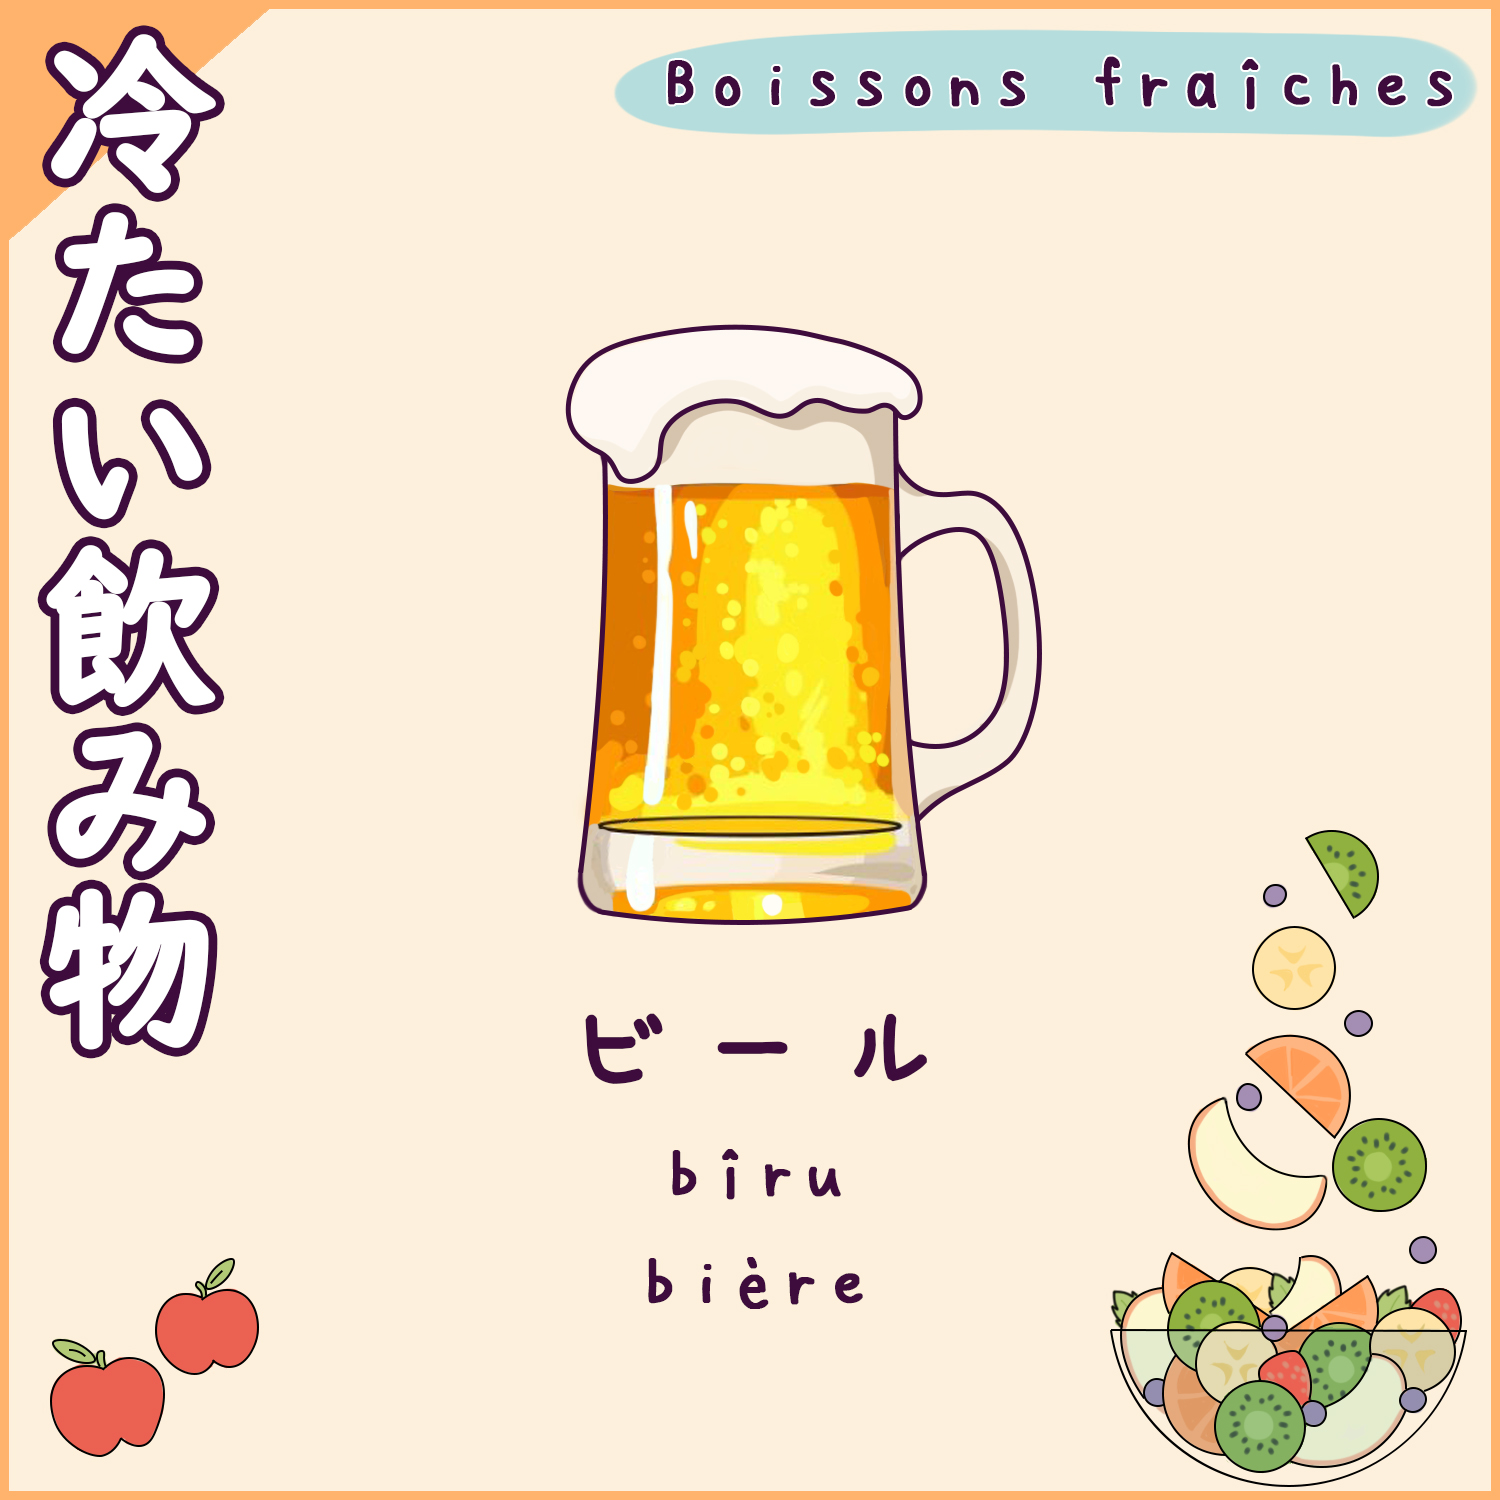 Boissons en japonais (fraîches) - bière